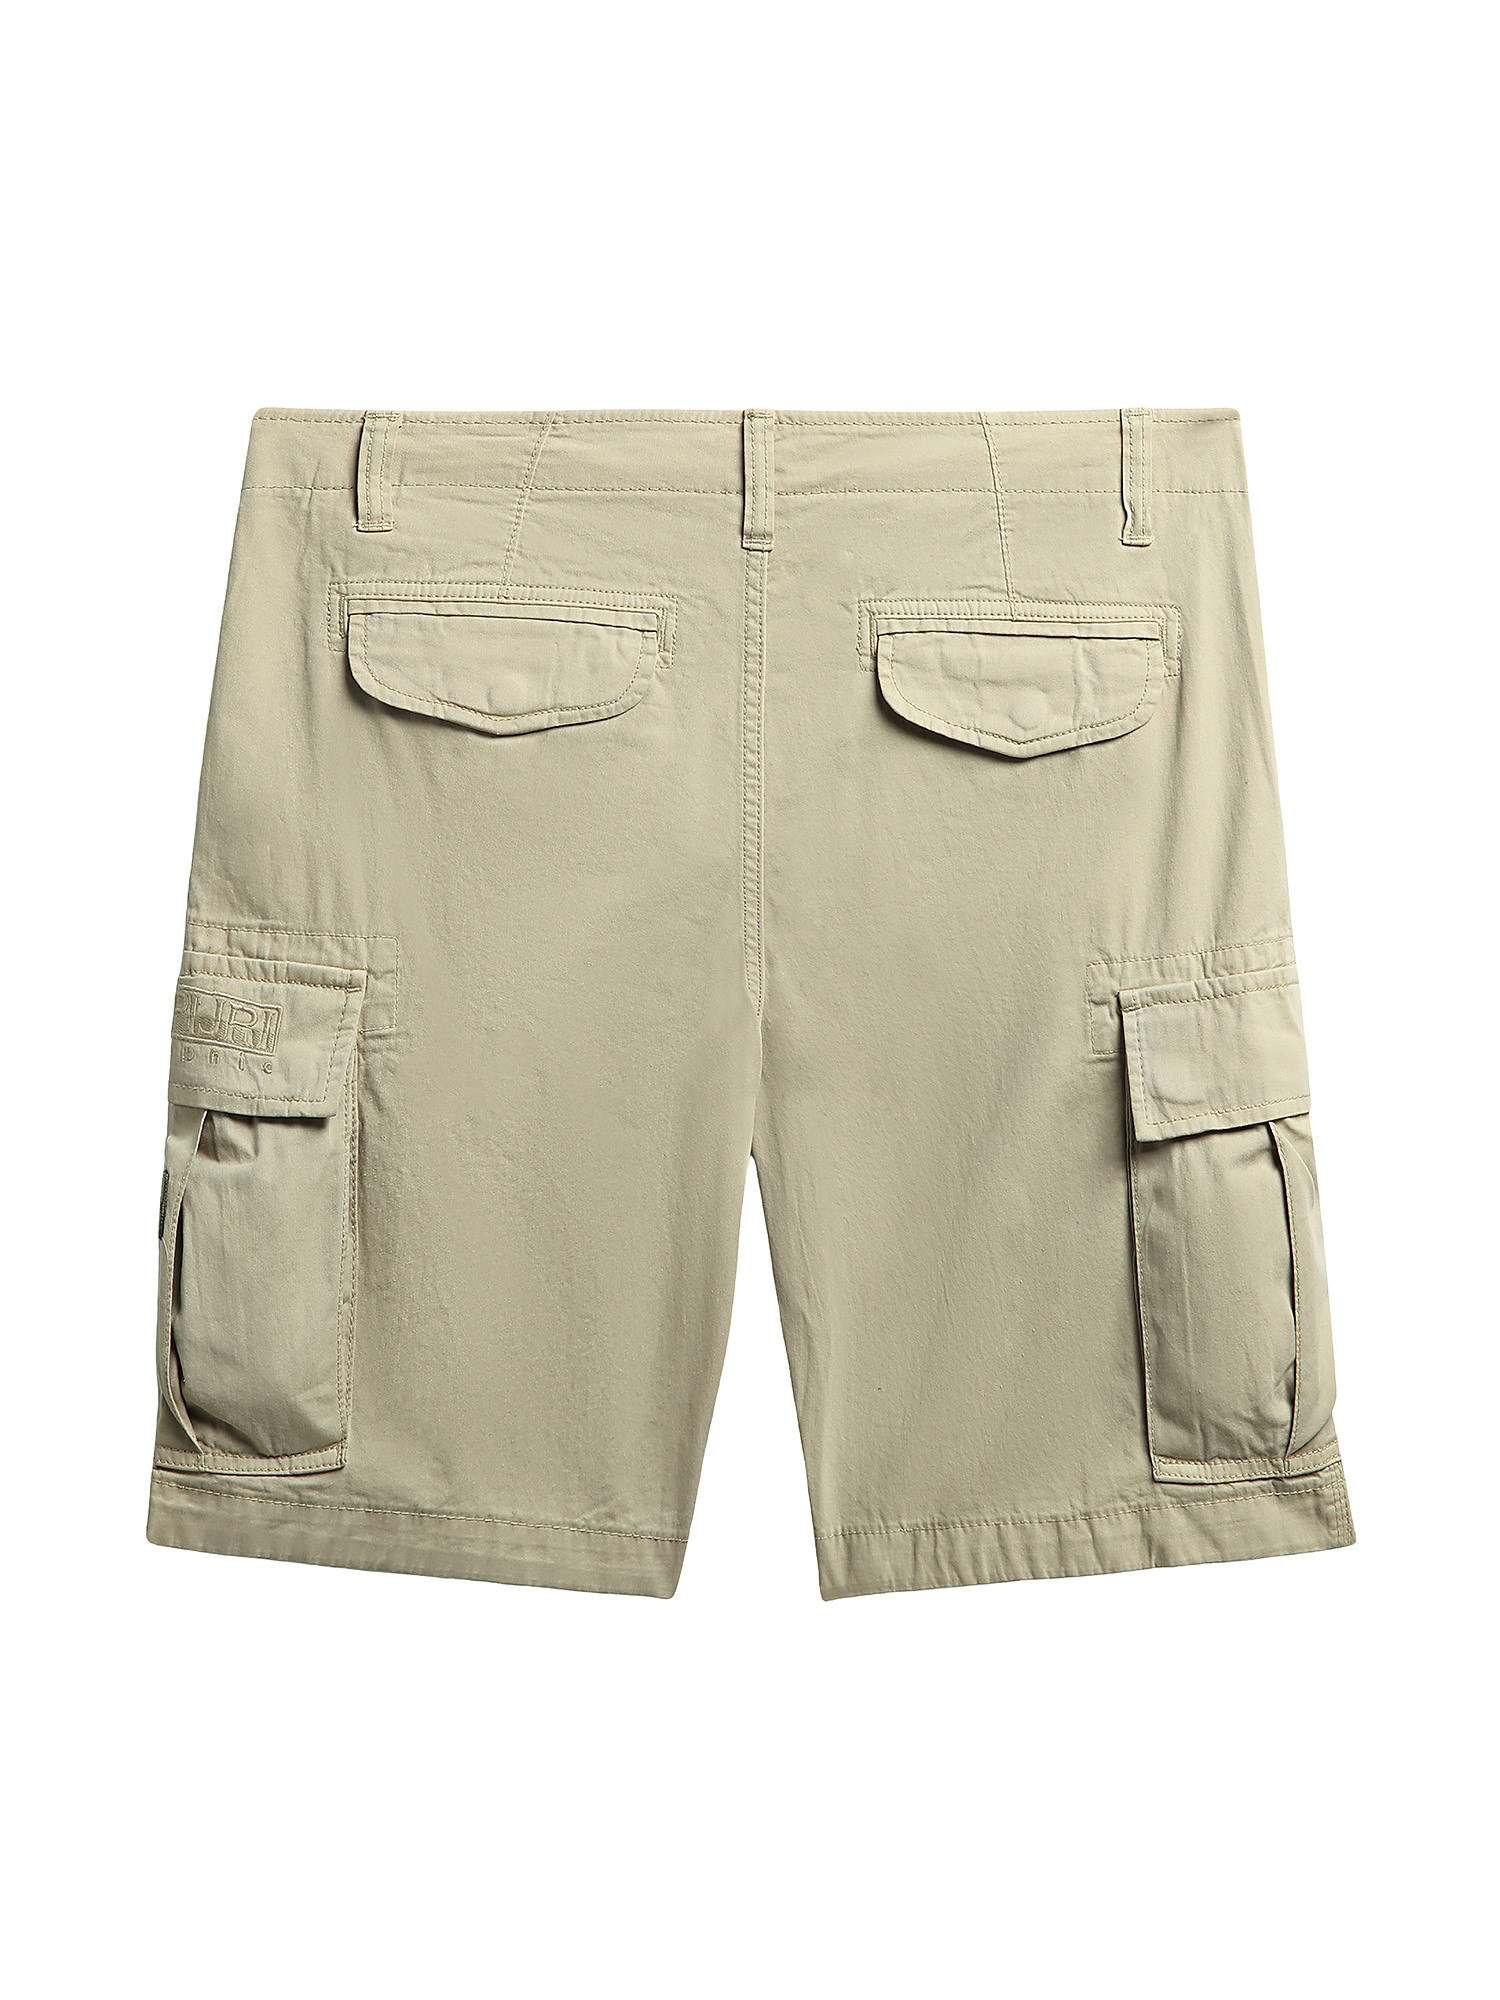 Pantaloni Bermuda Nus, Beige, large image number 1